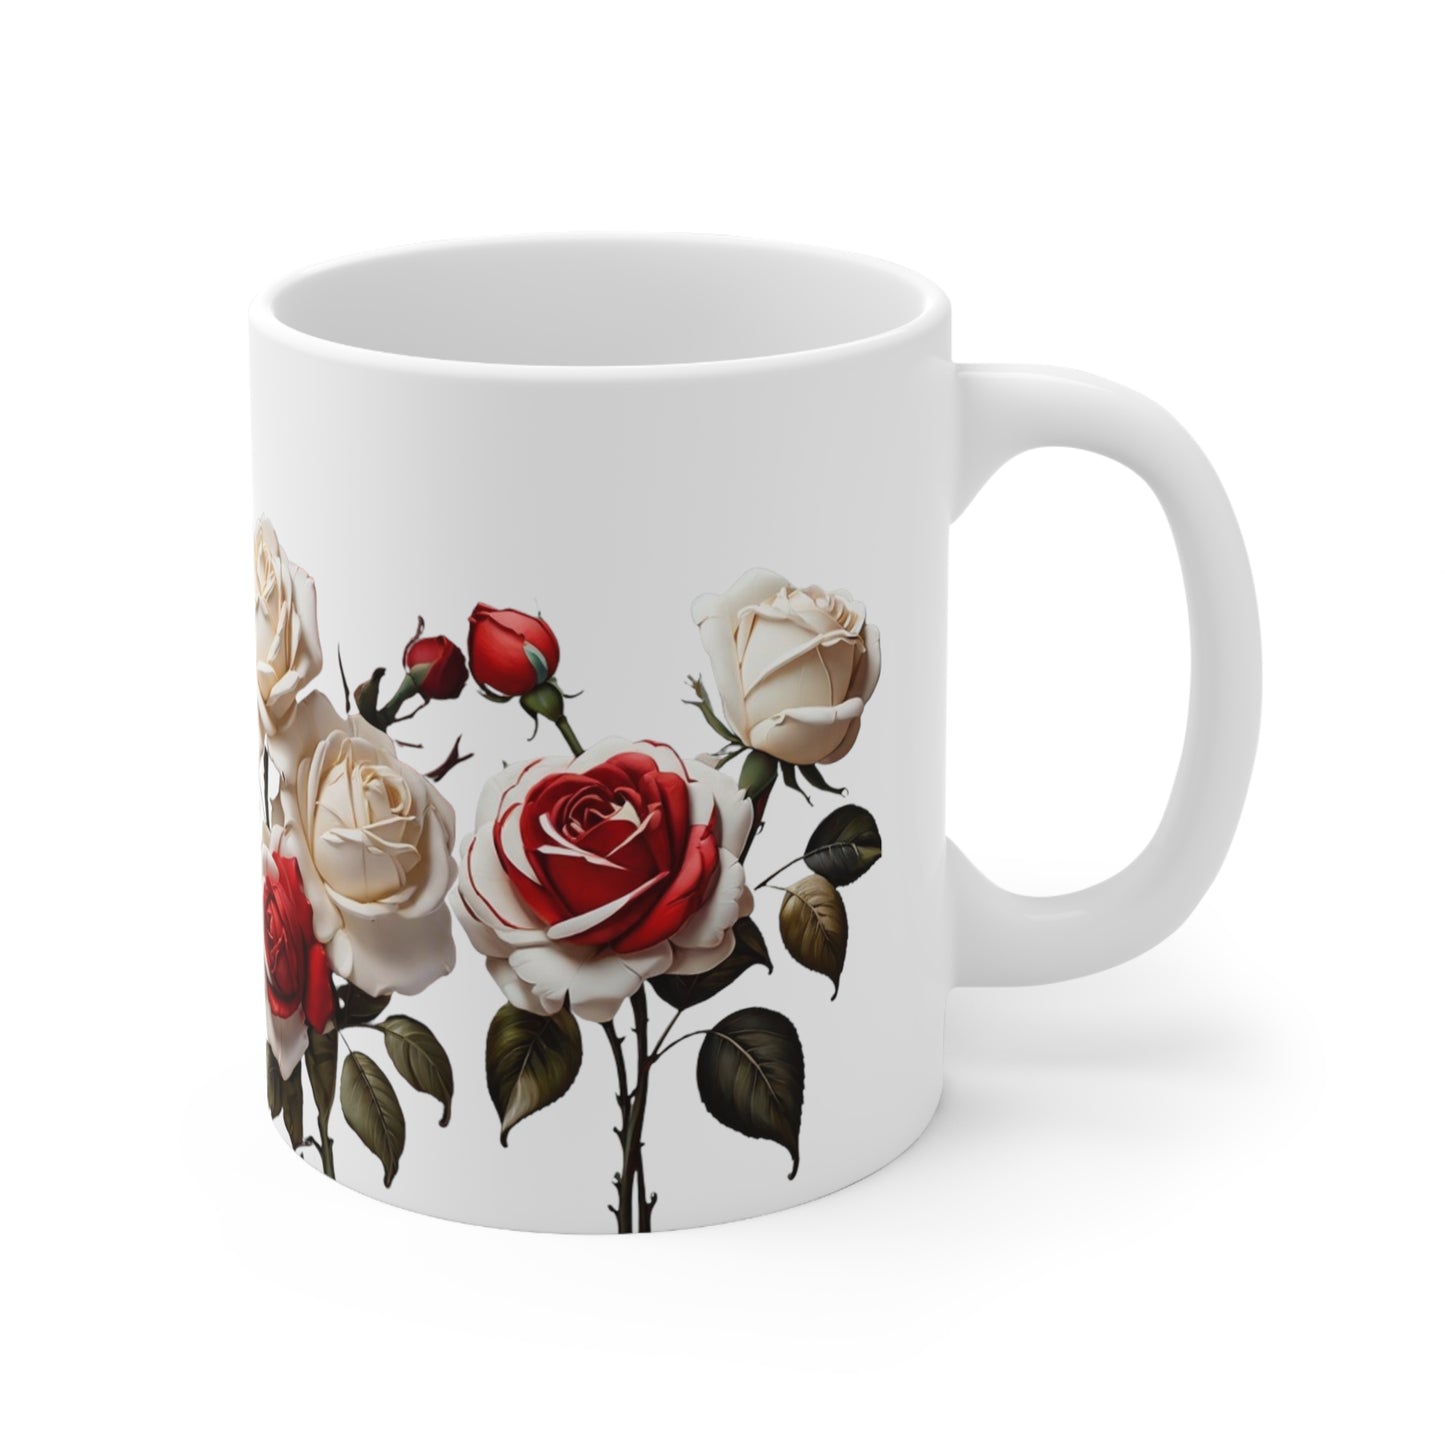 Red and White Roses Mug - Ceramic Coffee Mug 11oz